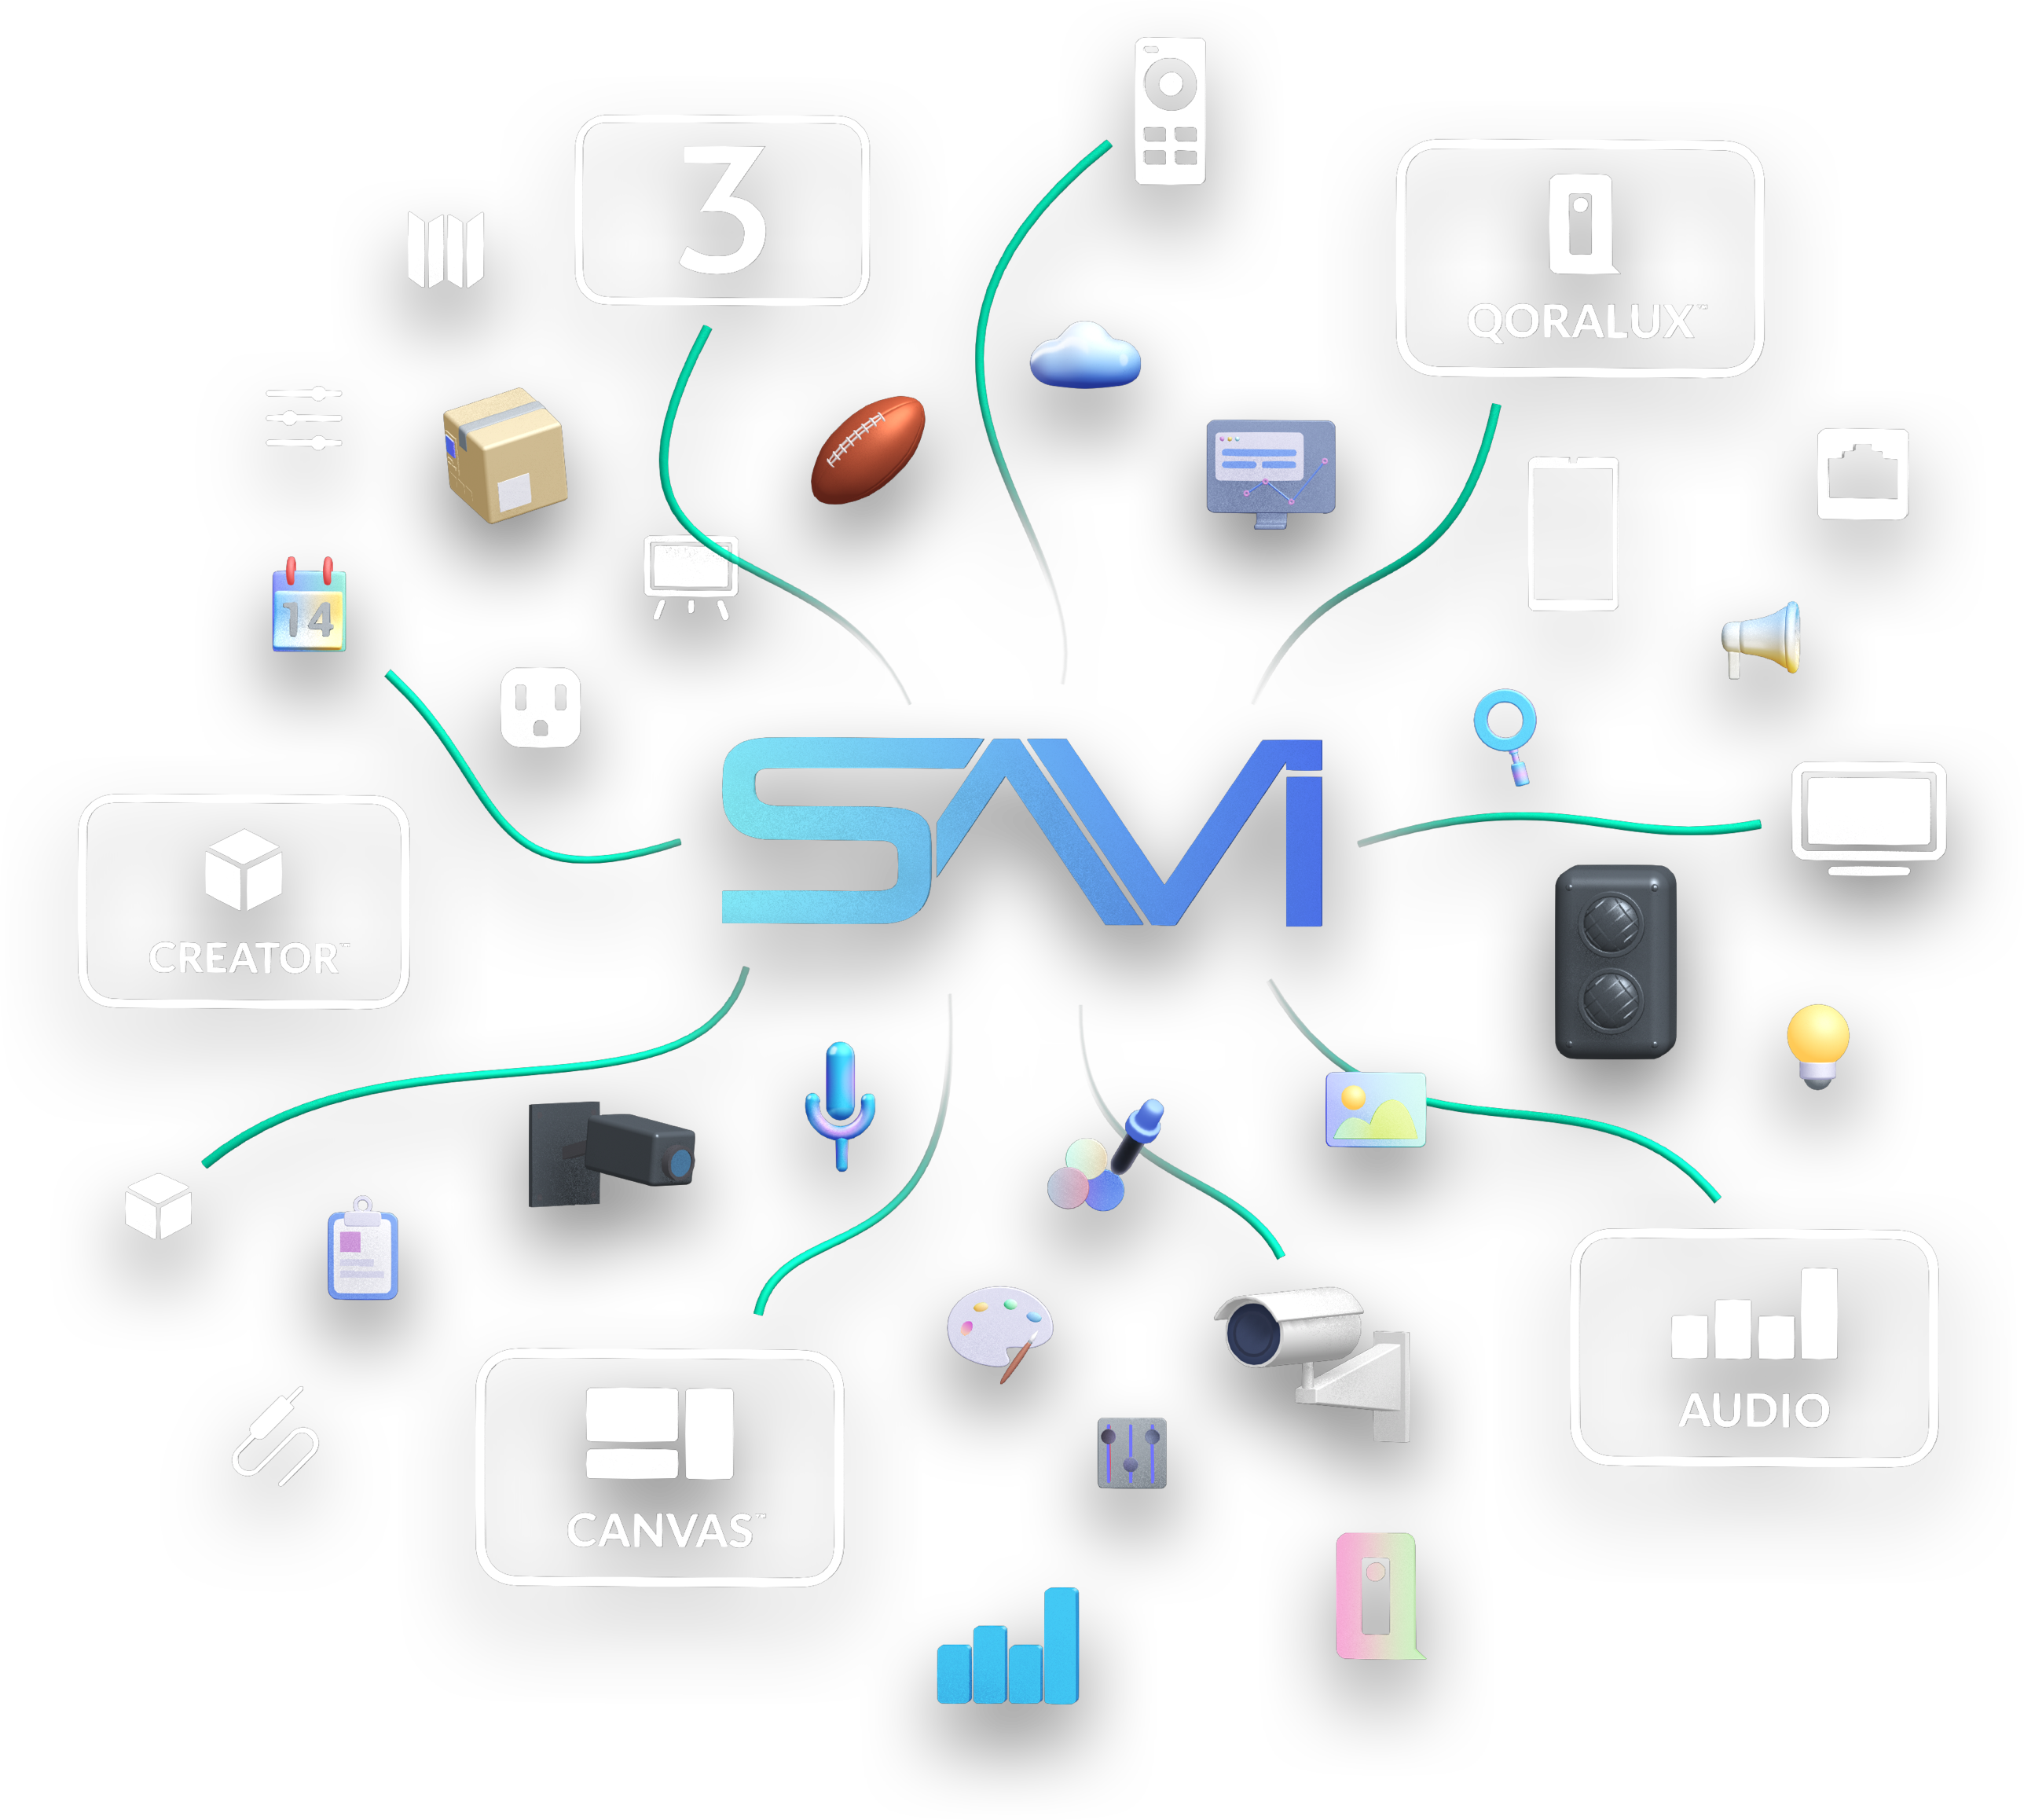 SAVI Audio Diagram